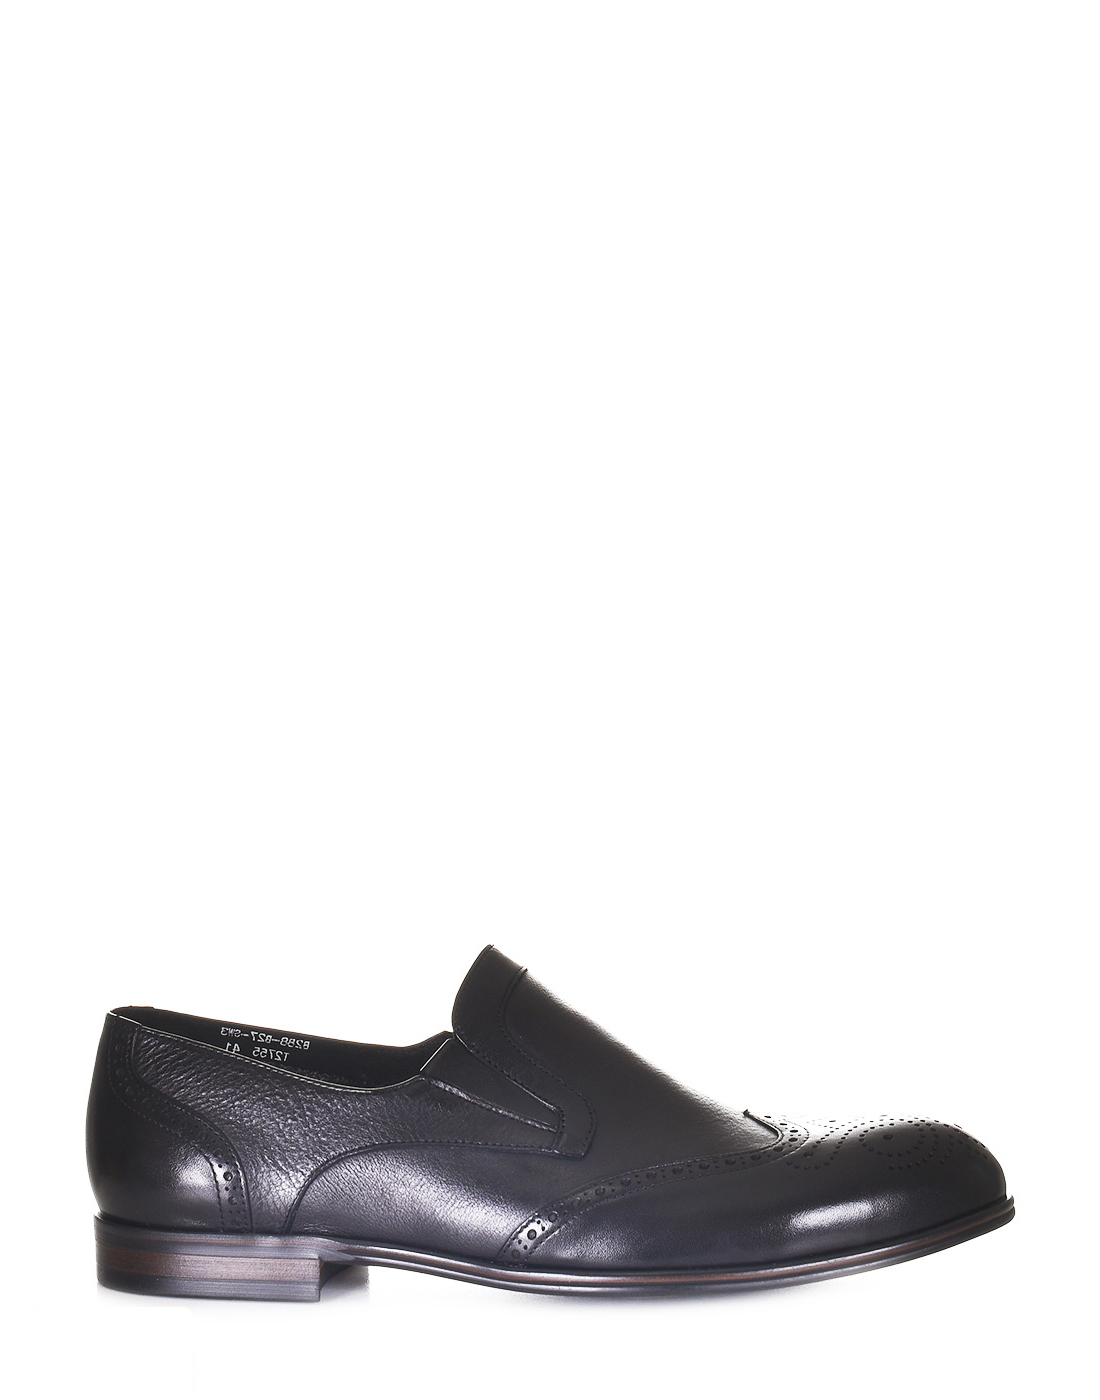 Туфли мужские ROSCOTE B288-B27 черные 41 RU